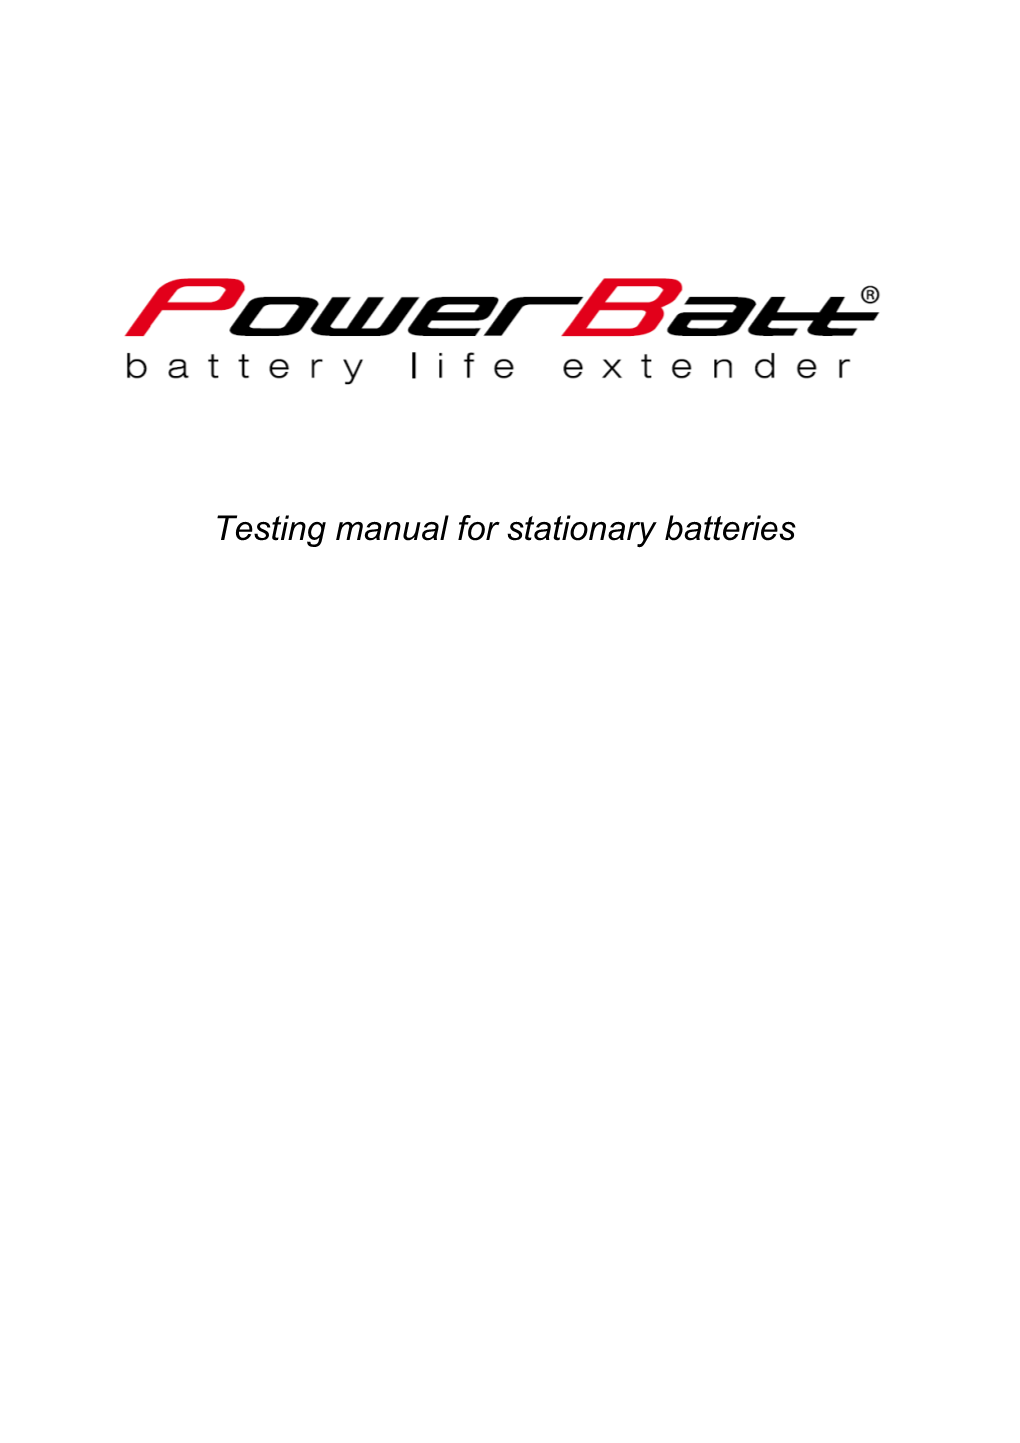 Powerbatt - Testing Manual for Starting Batteries